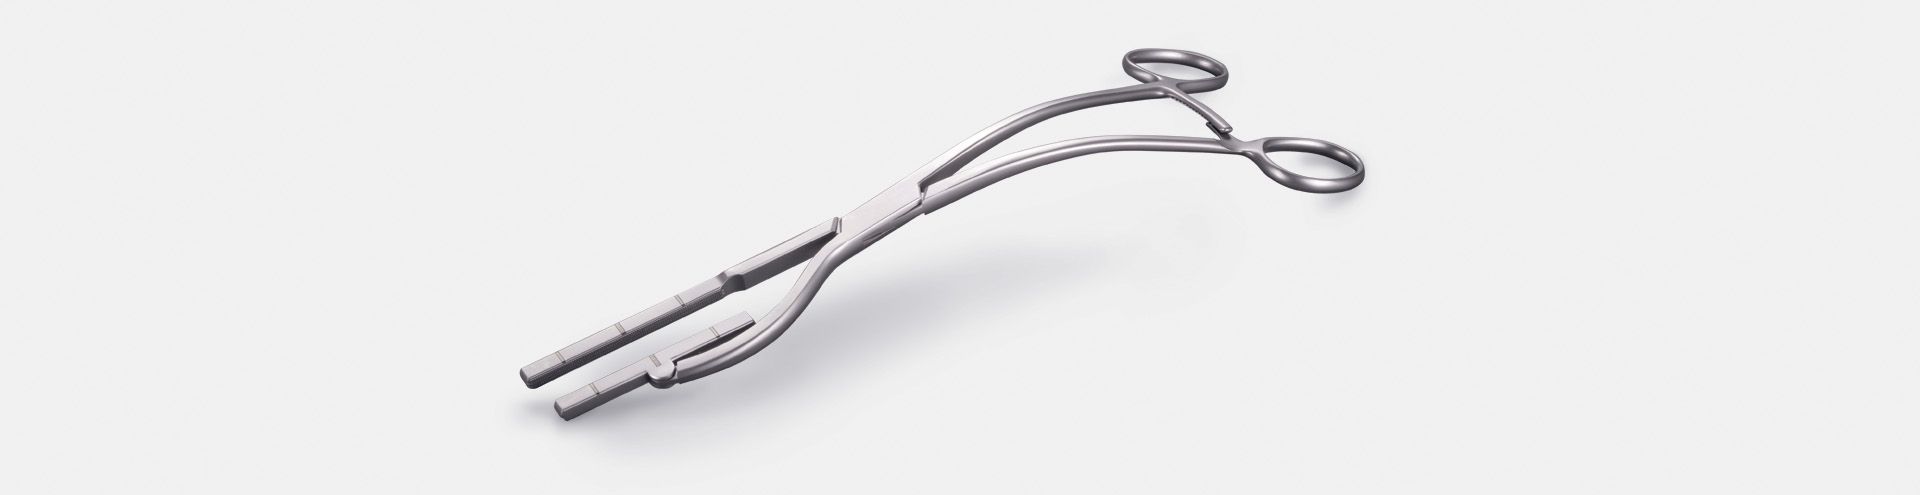 Chirurgische Instrumente für die Herz-, Thorax- und Gefäßchirurgie